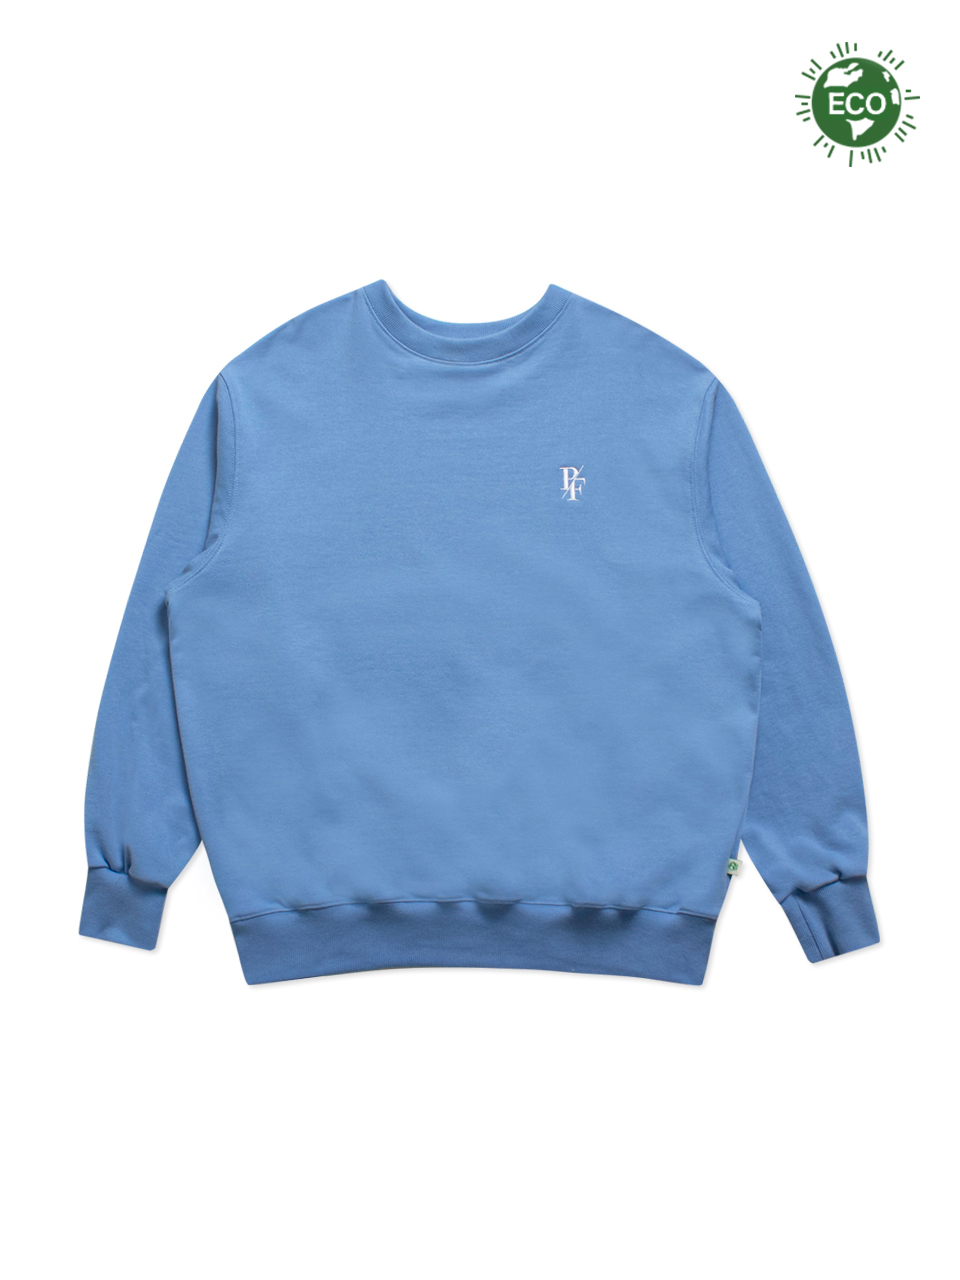 Wonder Sweatshirt Blue